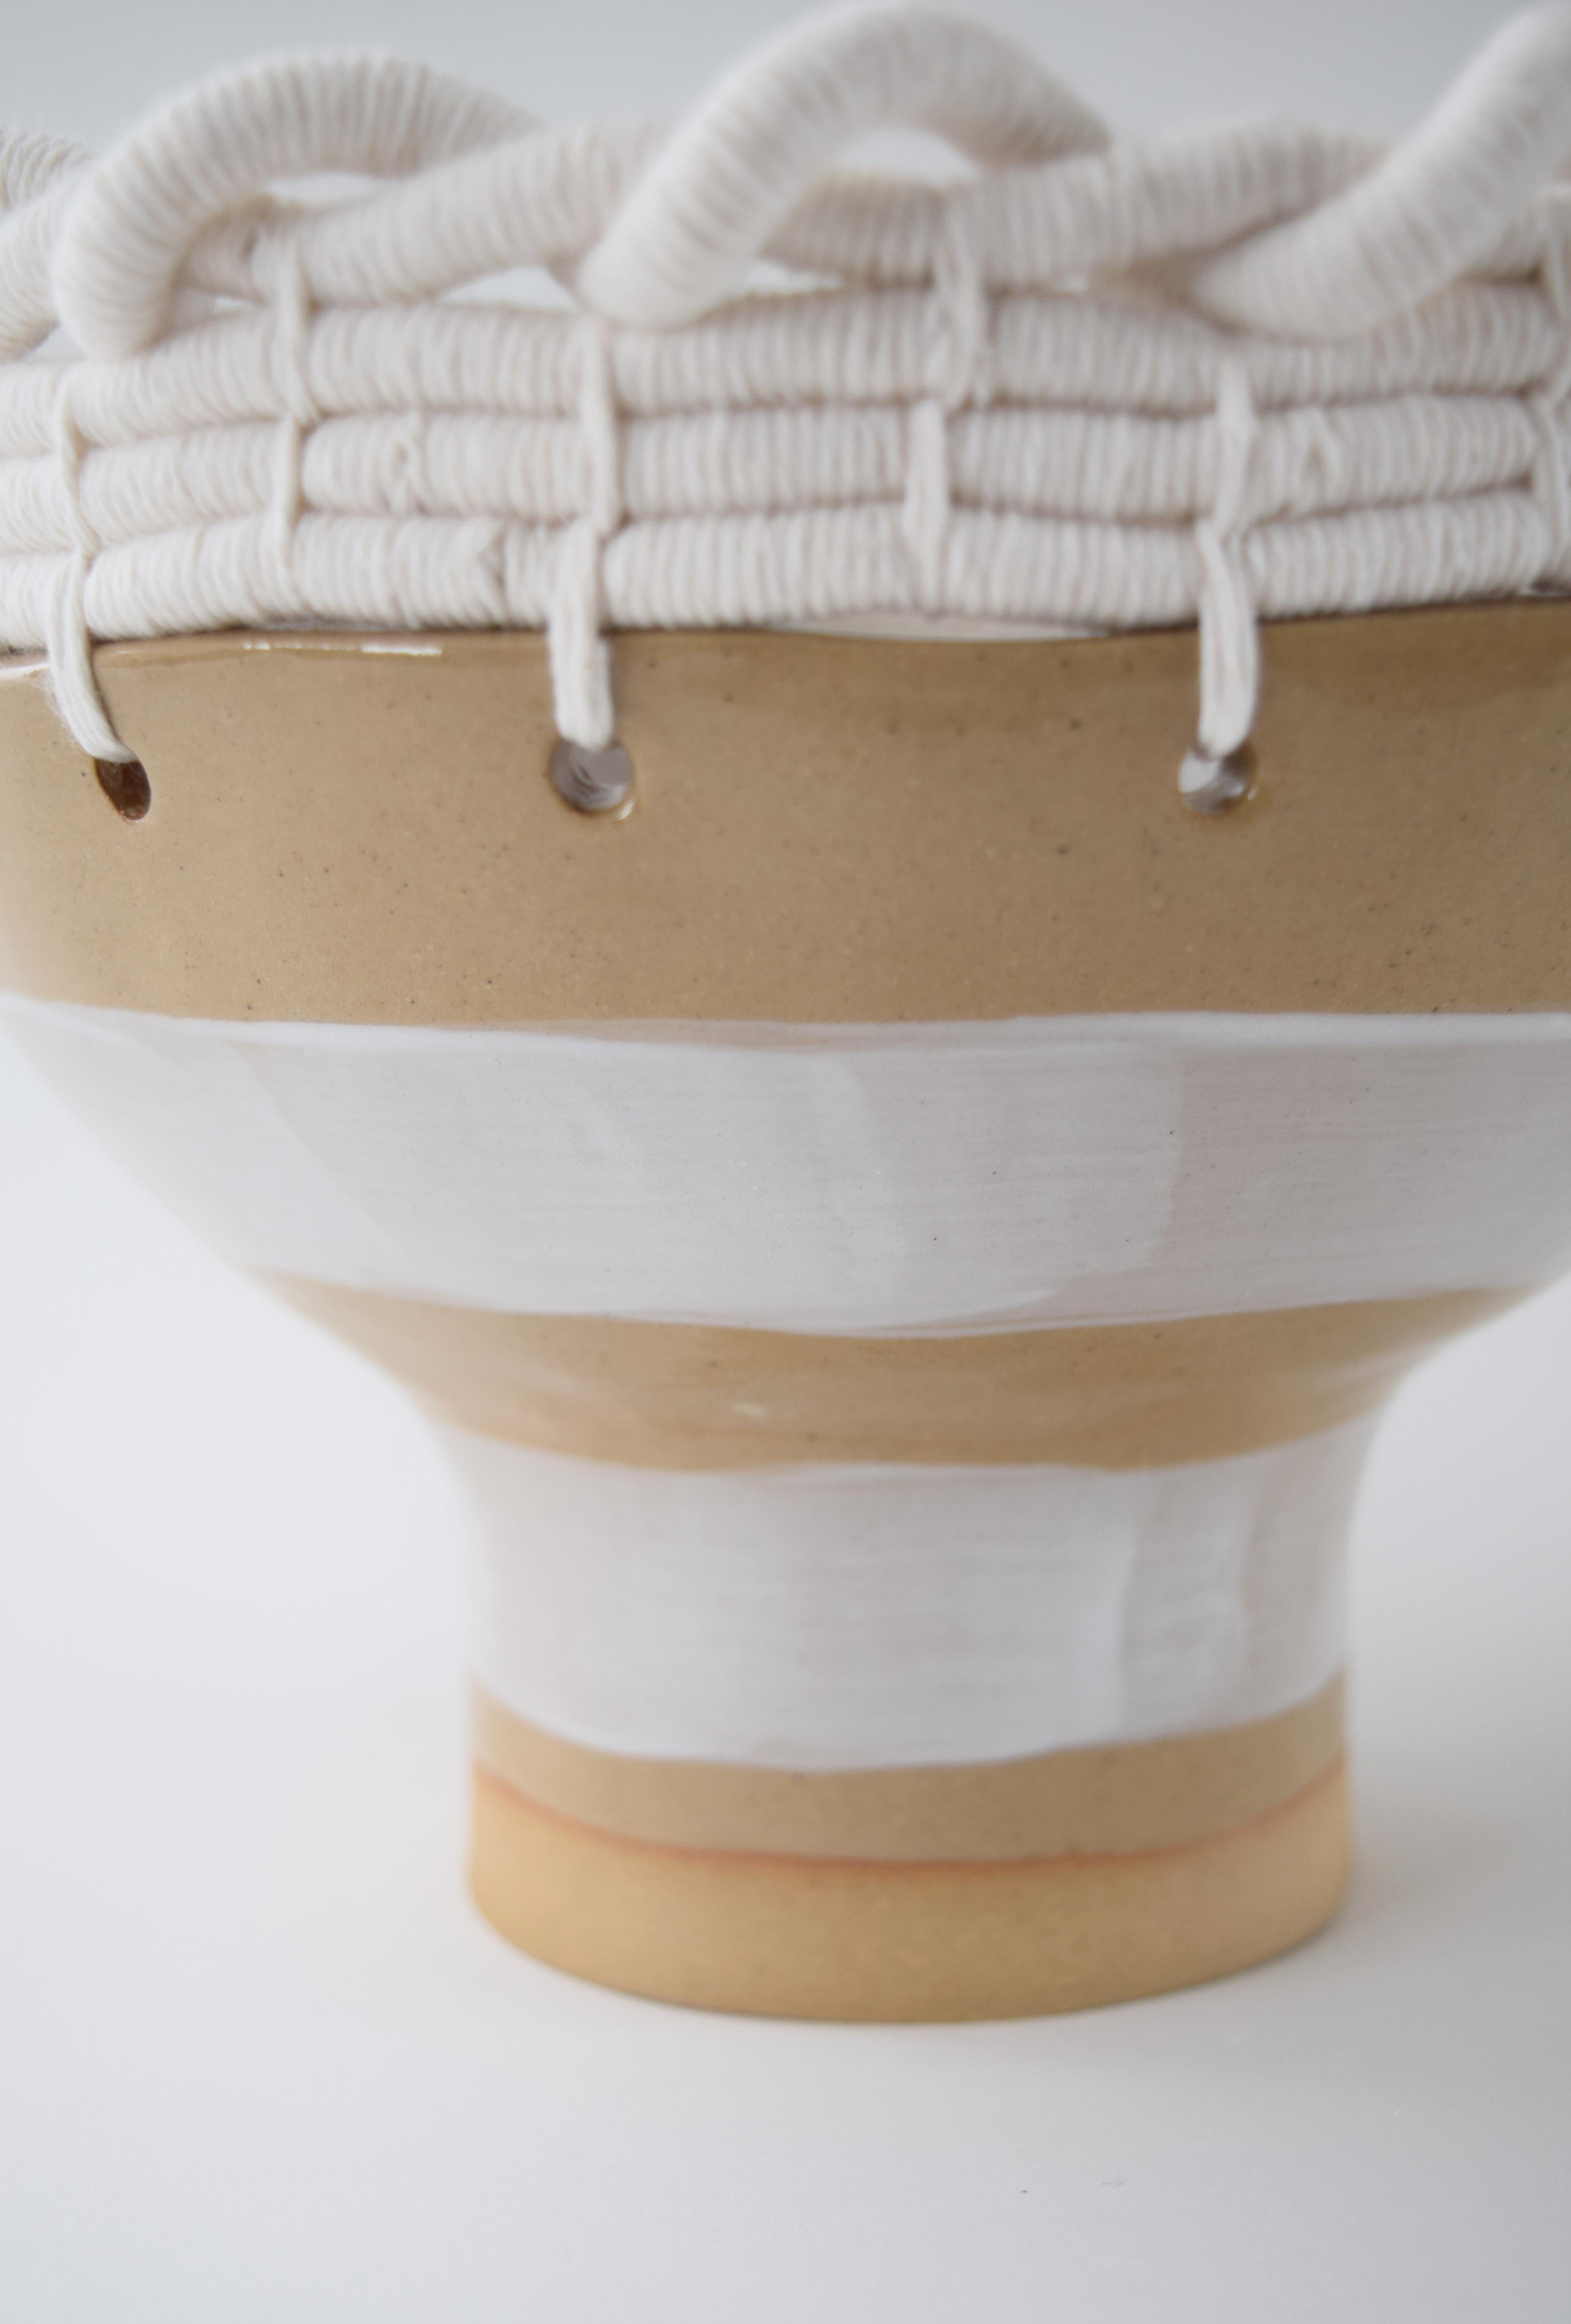 American OOAK Handmade Ceramic Bowl #799, Hand Glazed White Stripes & Woven Cotton Upper